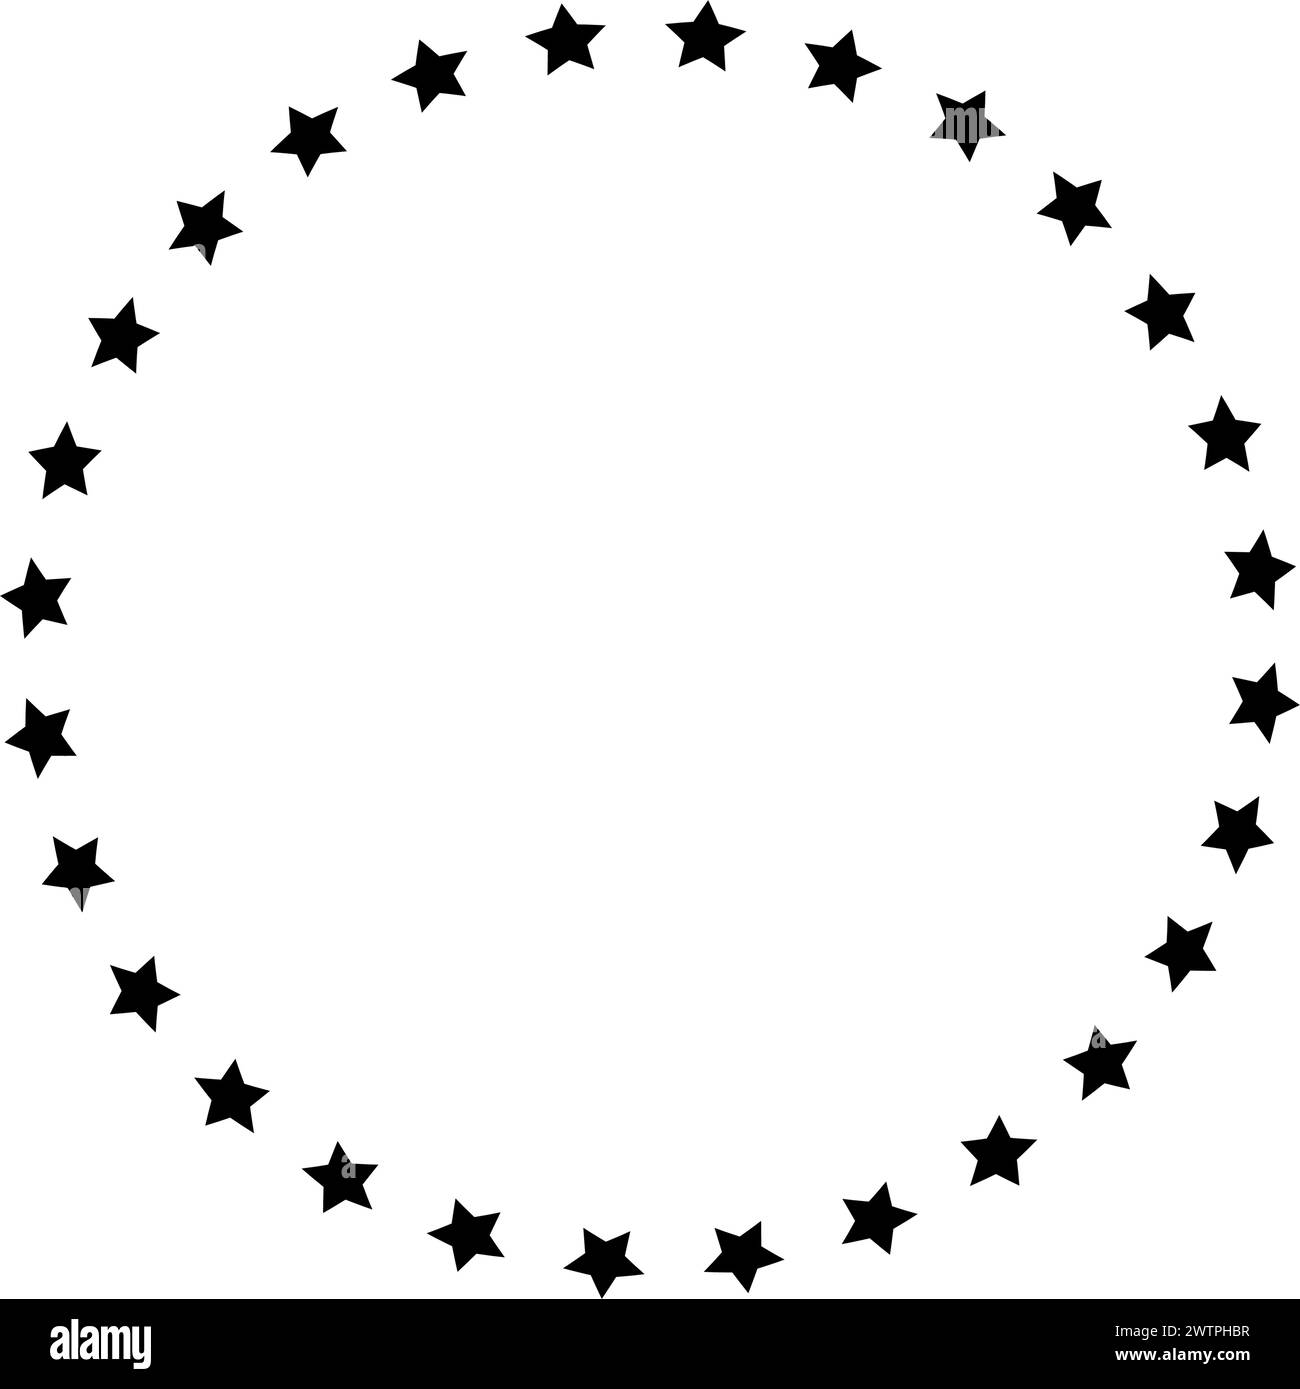 Cornice rotonda con stelle disposte in un cerchio isolato su sfondo bianco. Premio, successo o banner premio. Emblema con anello a stella con spazio vuoto. Illustrazione grafica vettoriale. Illustrazione Vettoriale